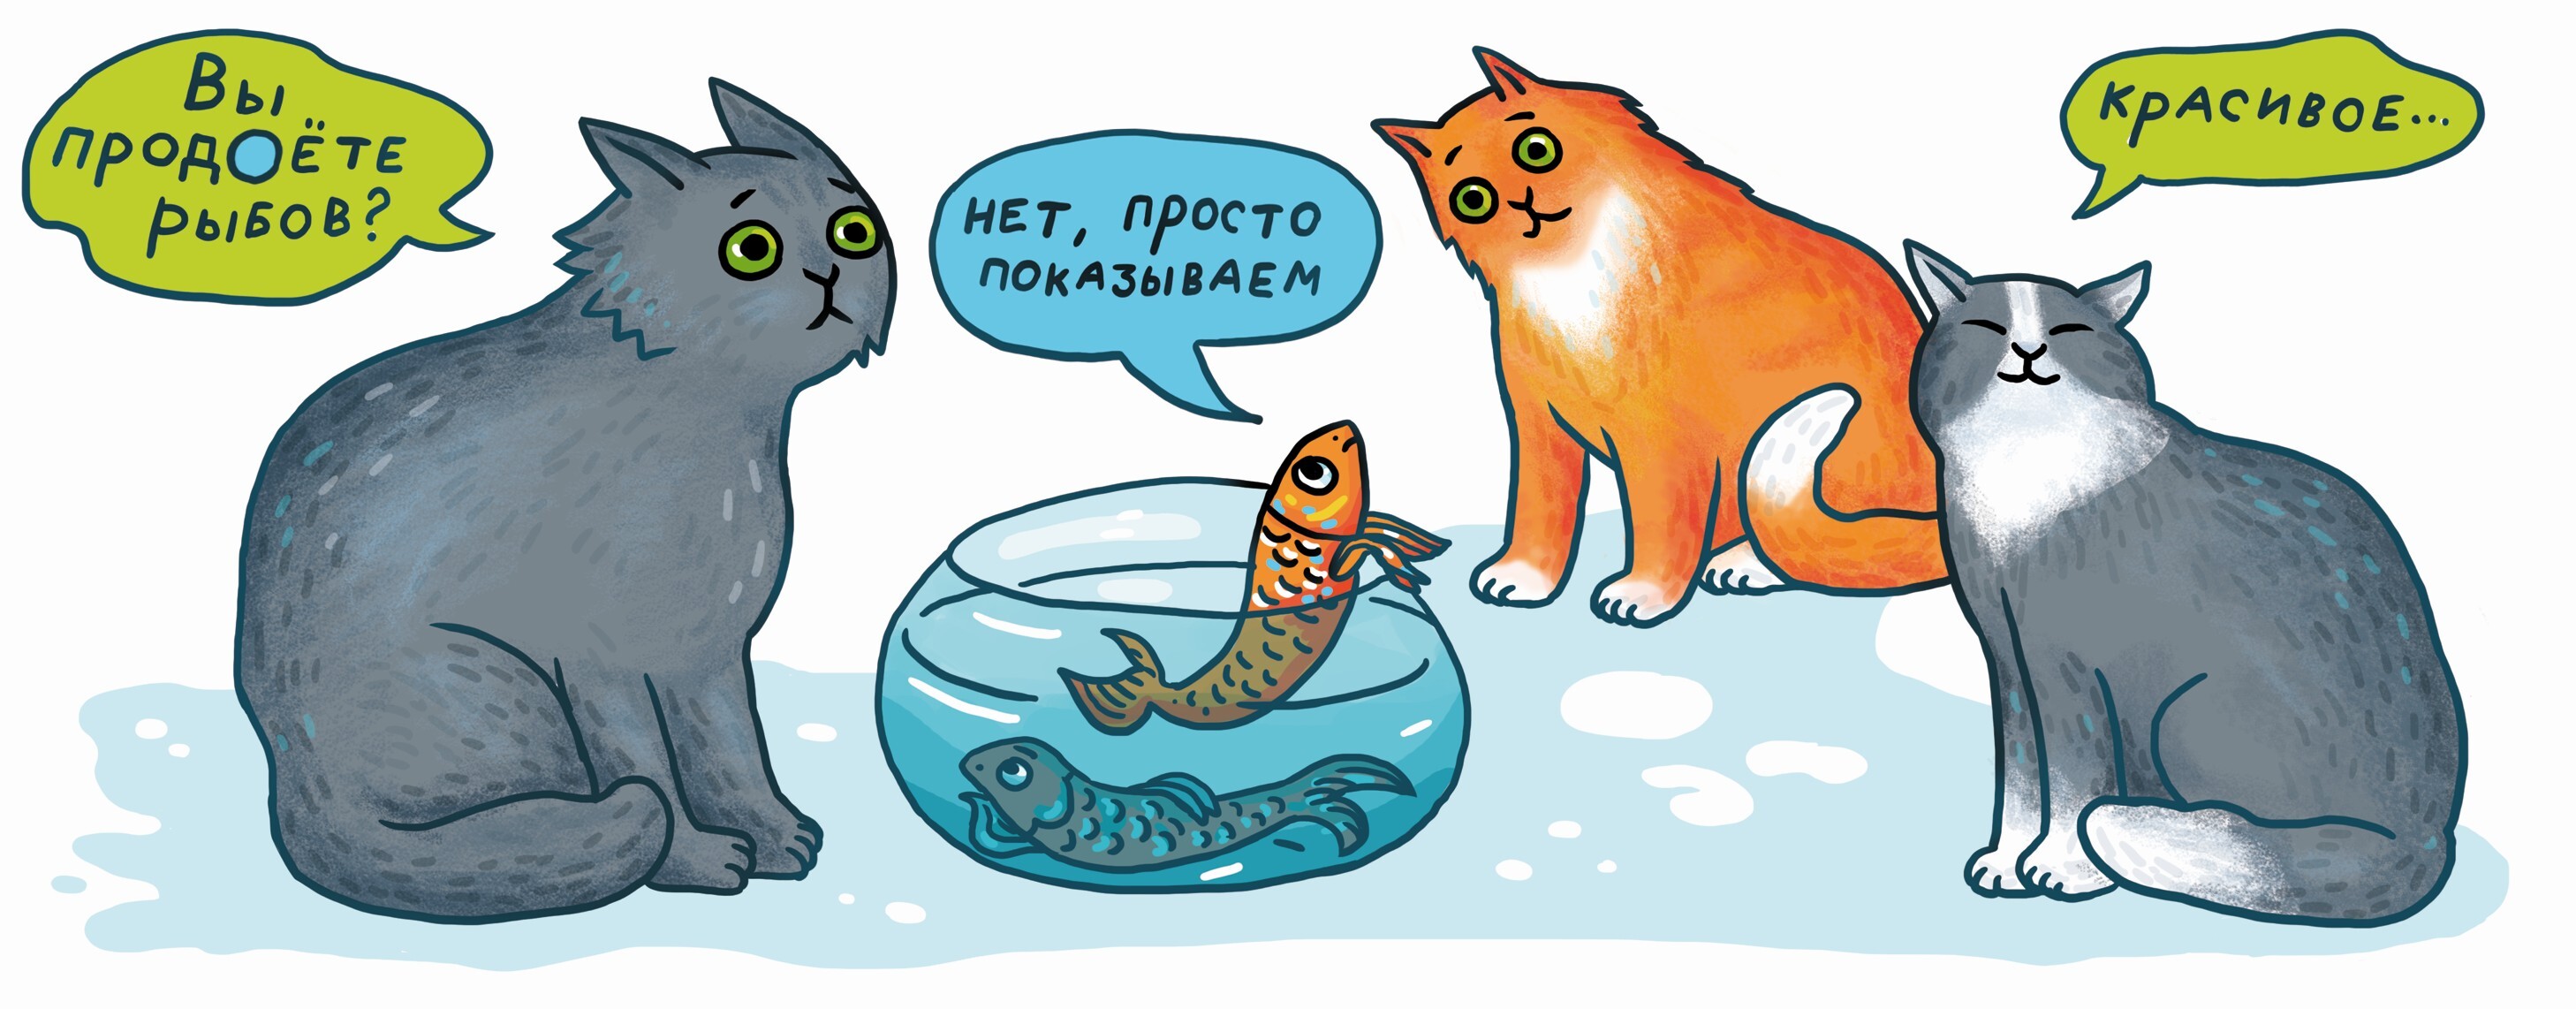 Мем про рыбов. Коты вы продаете Рыбов. Продоете Рыбов. Коты мемы про рыбу. Мем с котами и рыбой.